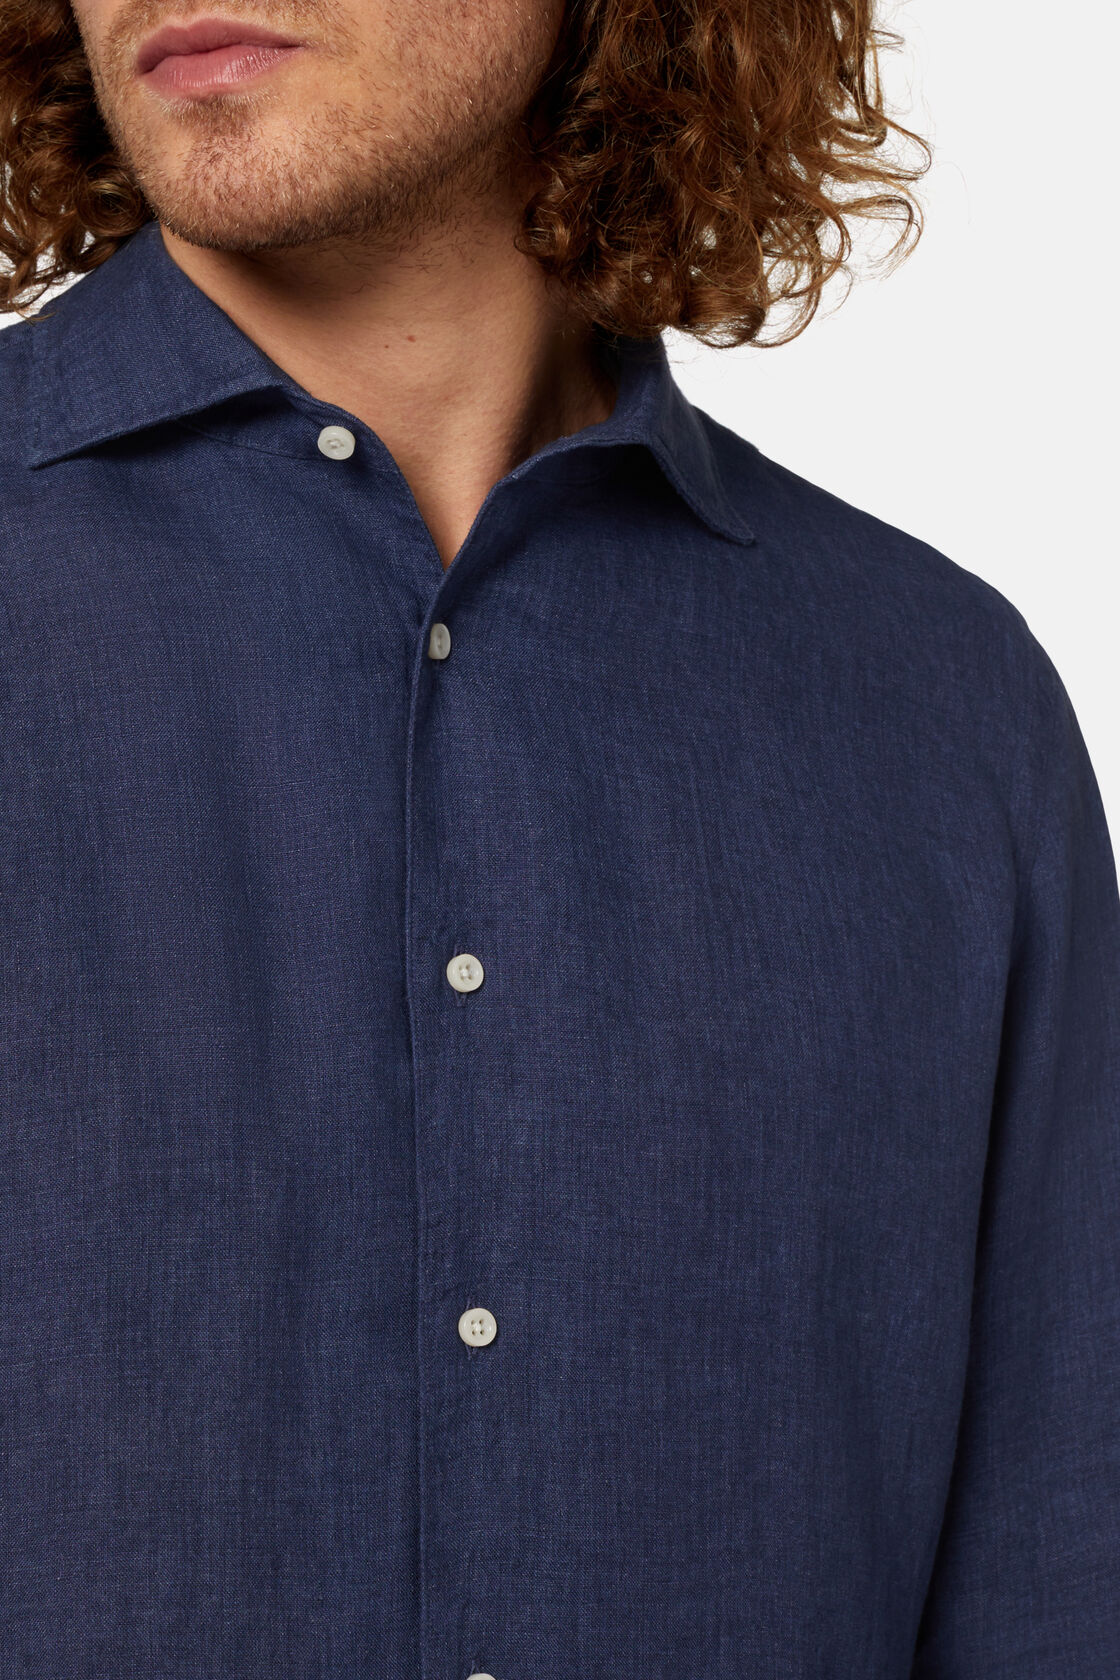 Granatowa koszula lniana, klasyczny fason, Navy blue, hi-res